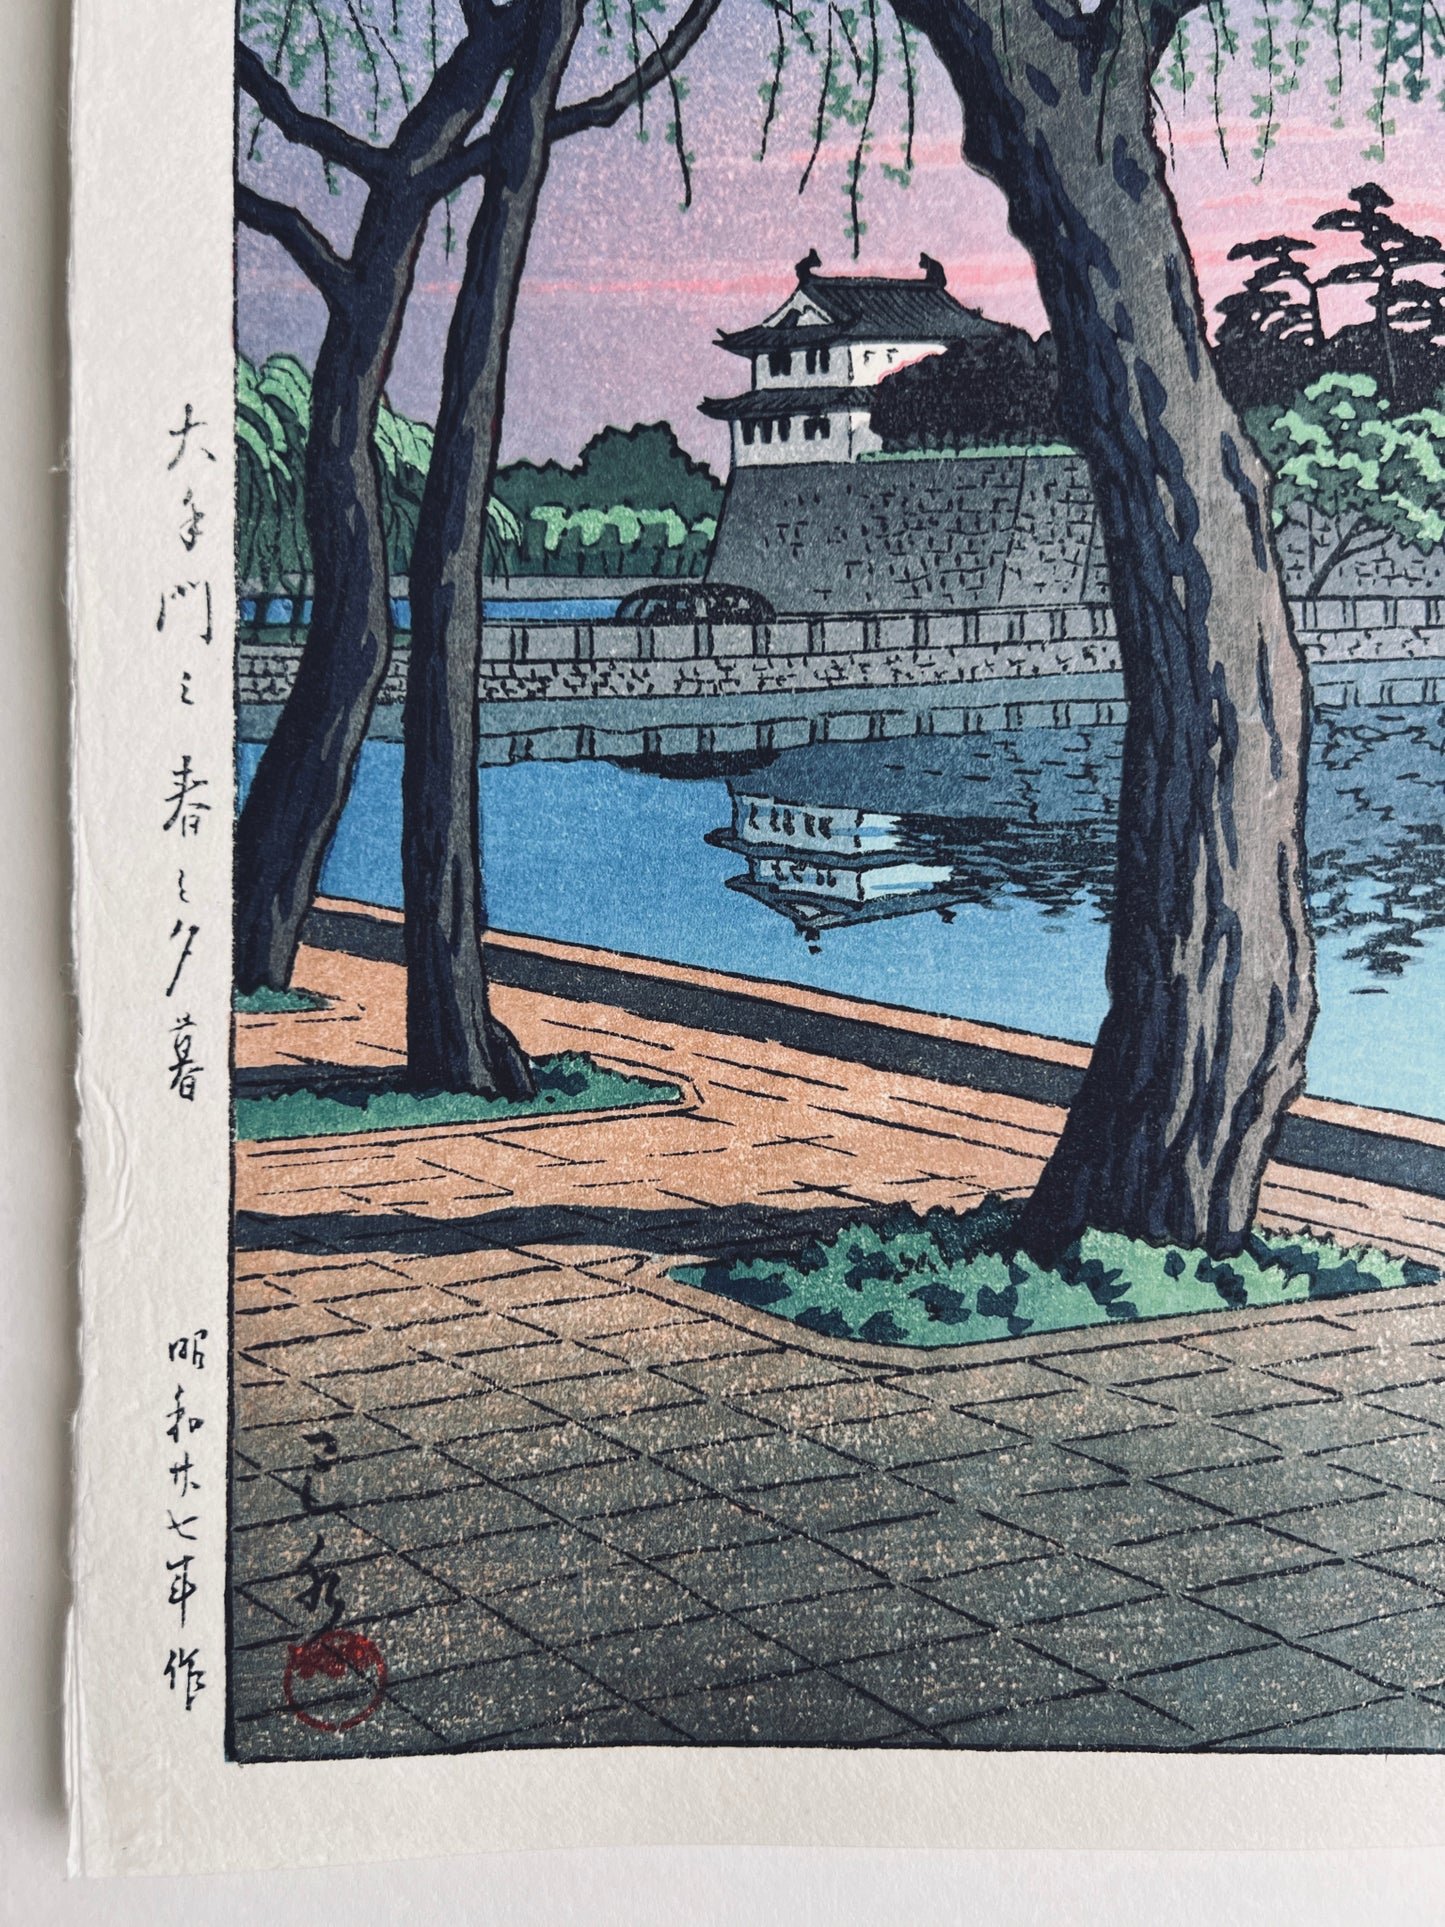 estampe japonaise lumière rose du soir sur le palais impérial de Tokyo, reflet du chateau dans la rivière, calligraphie japonaise